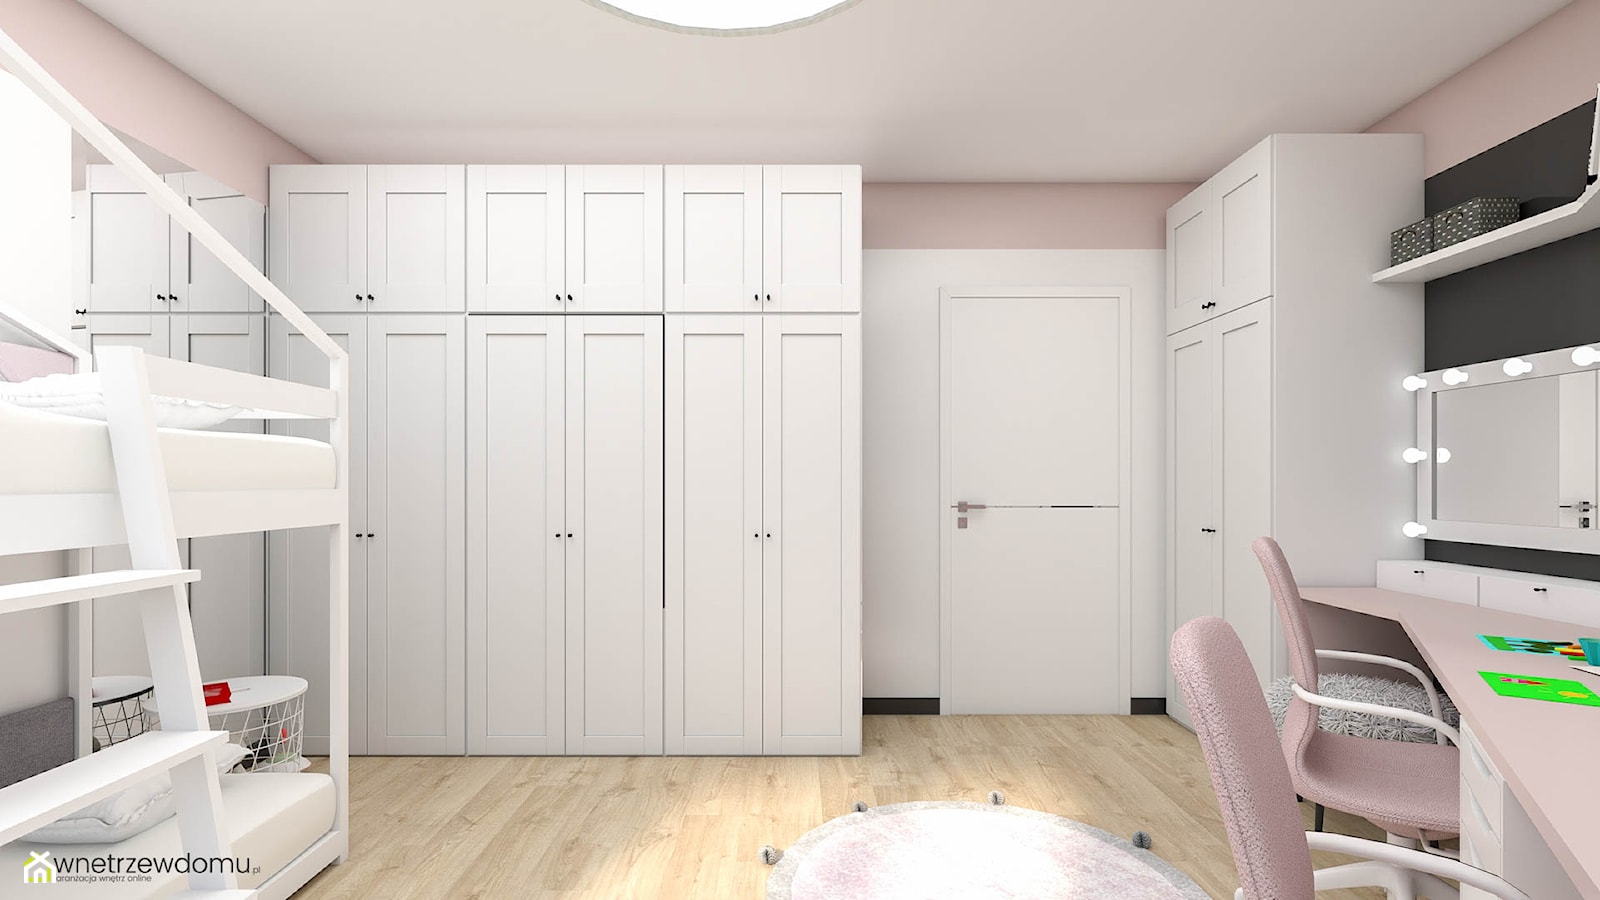 Różowo-biały pokój dla dziewczynek - zdjęcie od wnetrzewdomu - Homebook